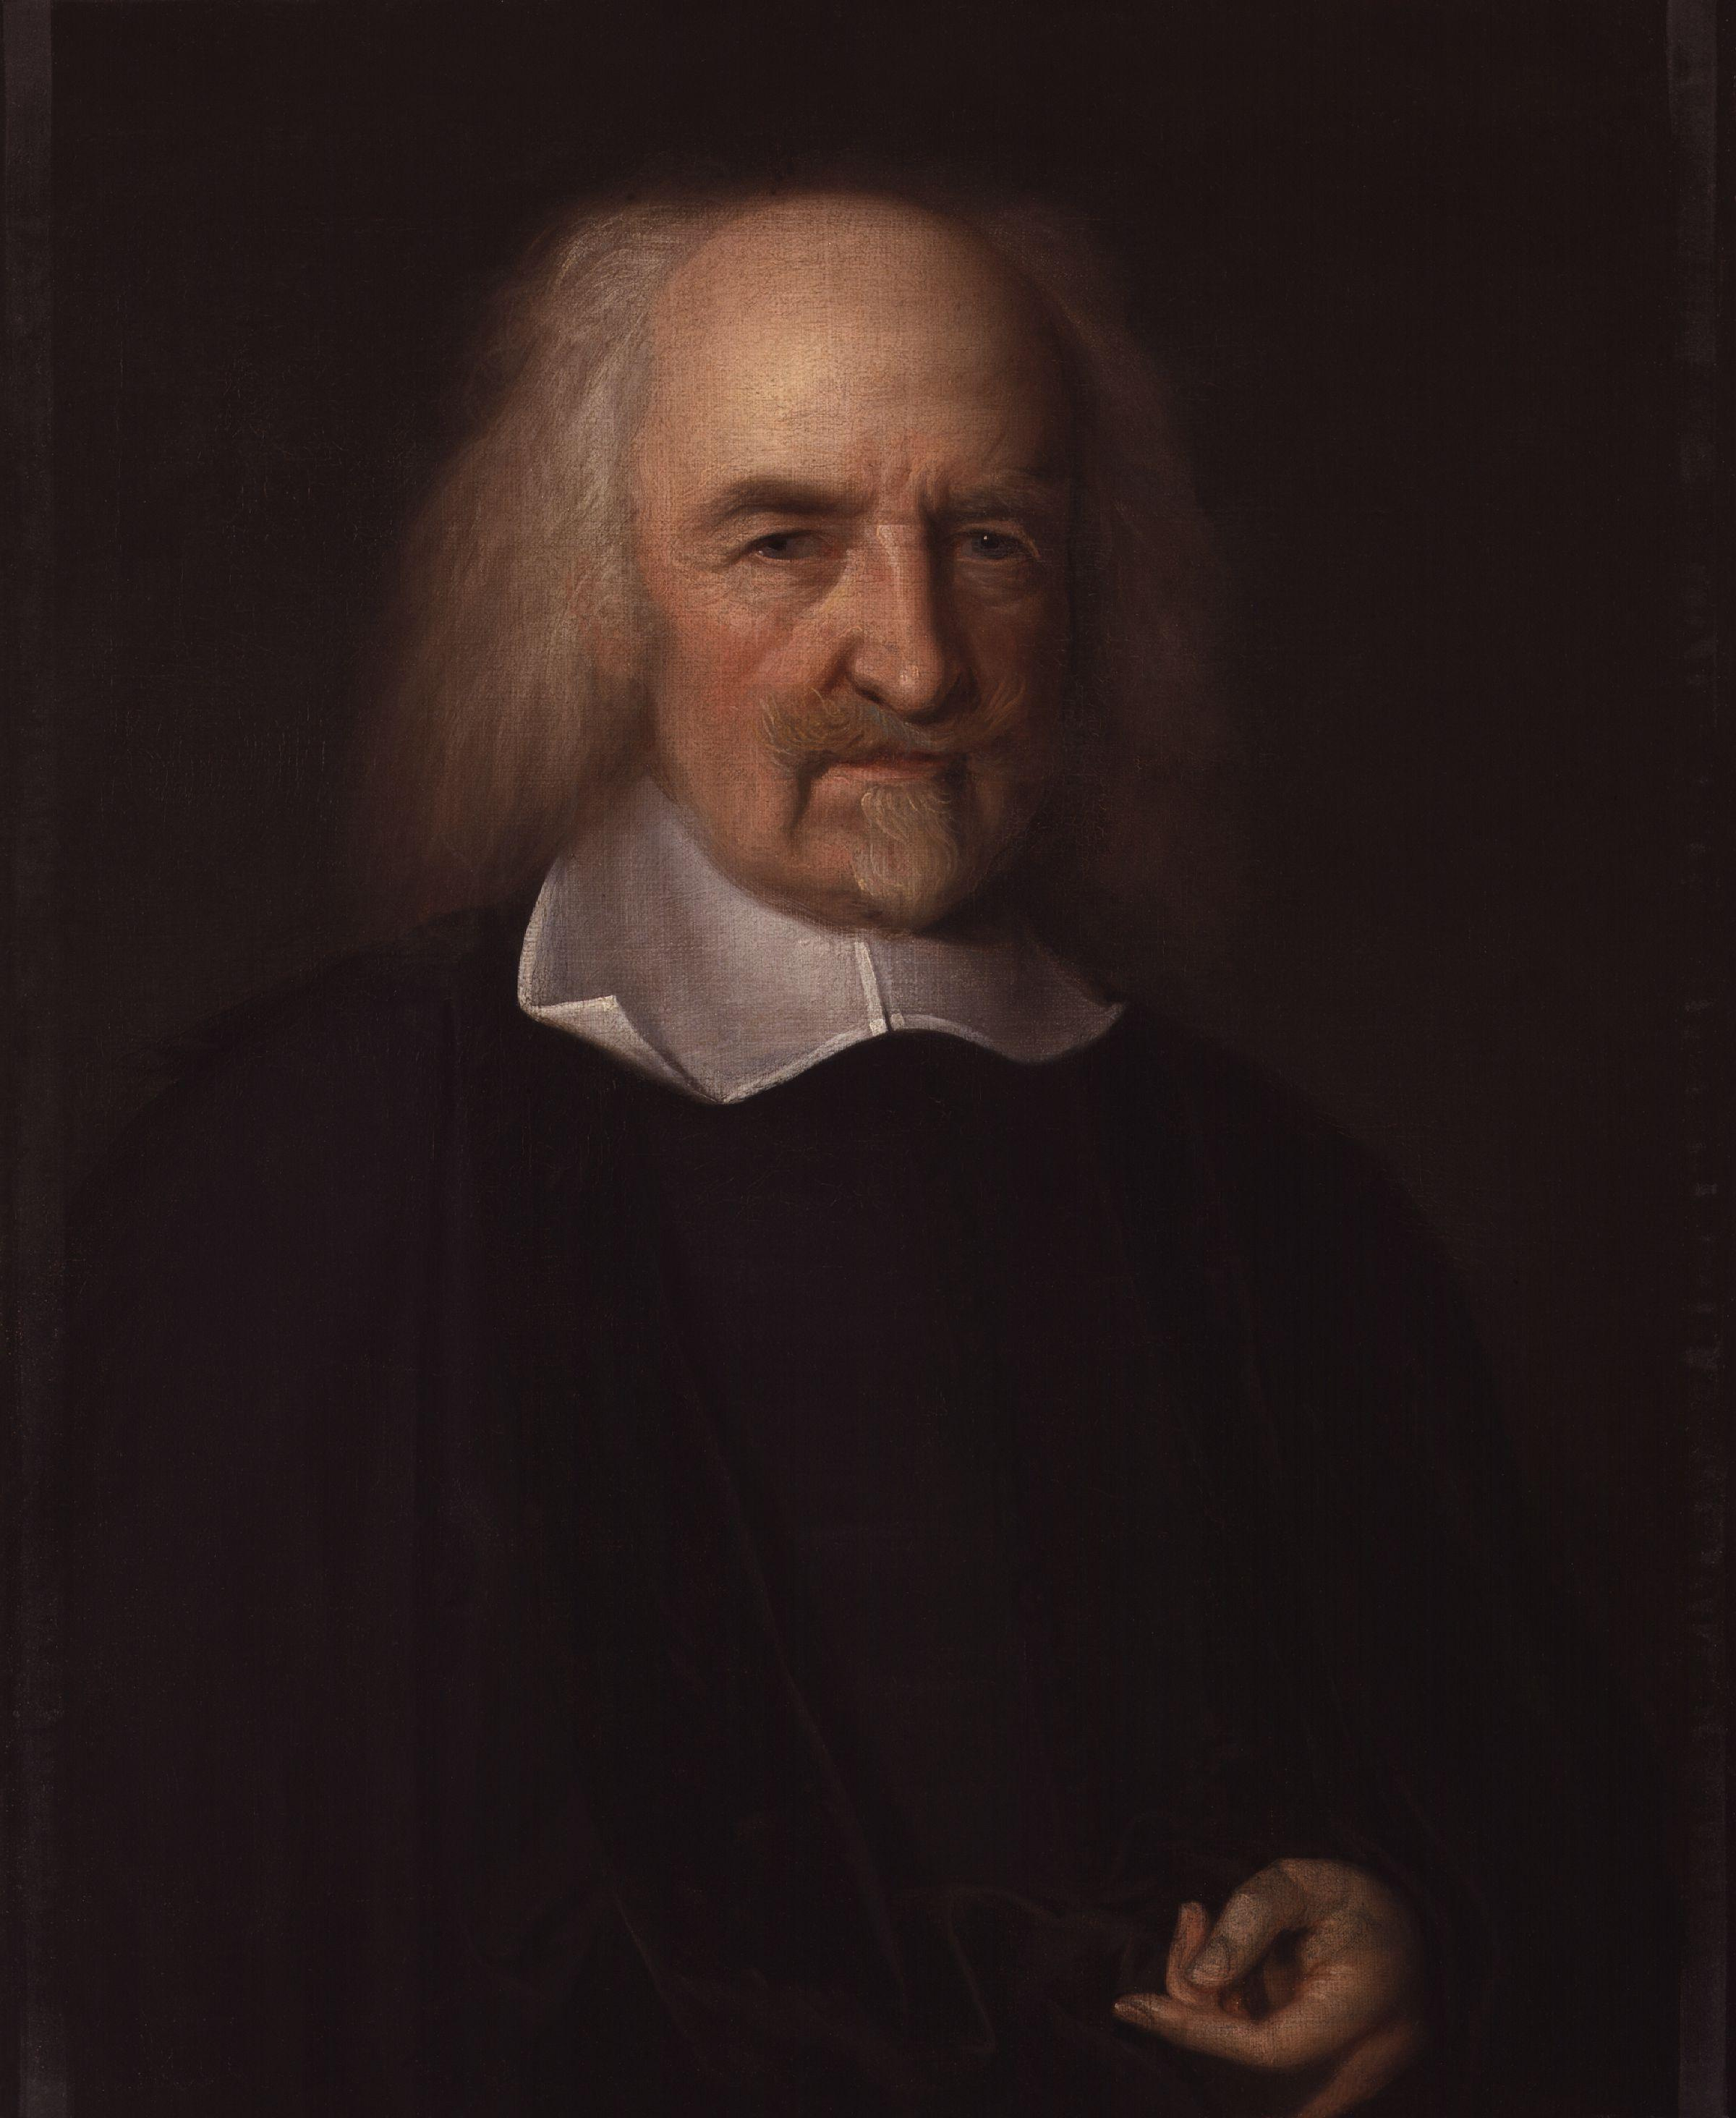  Biografi Thomas Hobbes